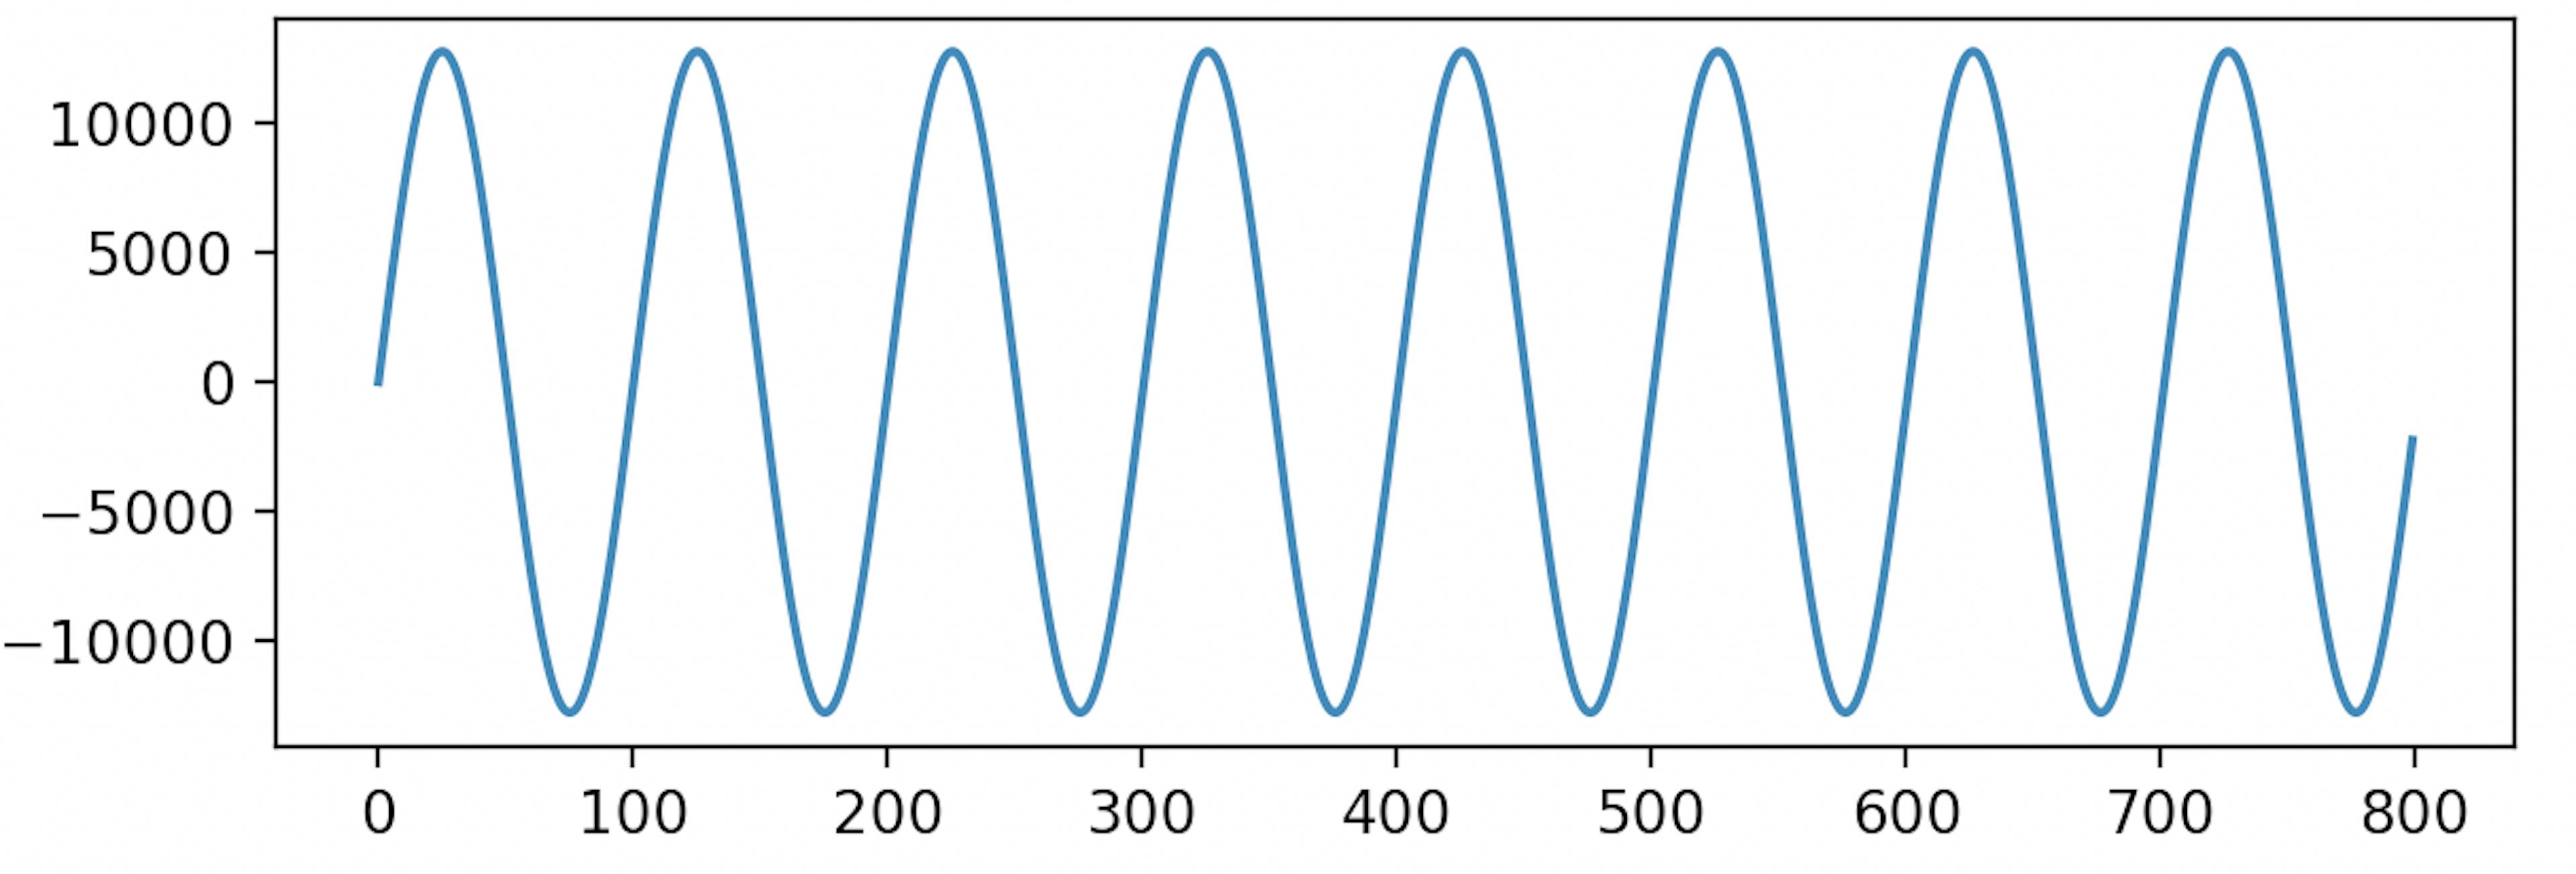 Plot of a 440 Hz clean sine wave